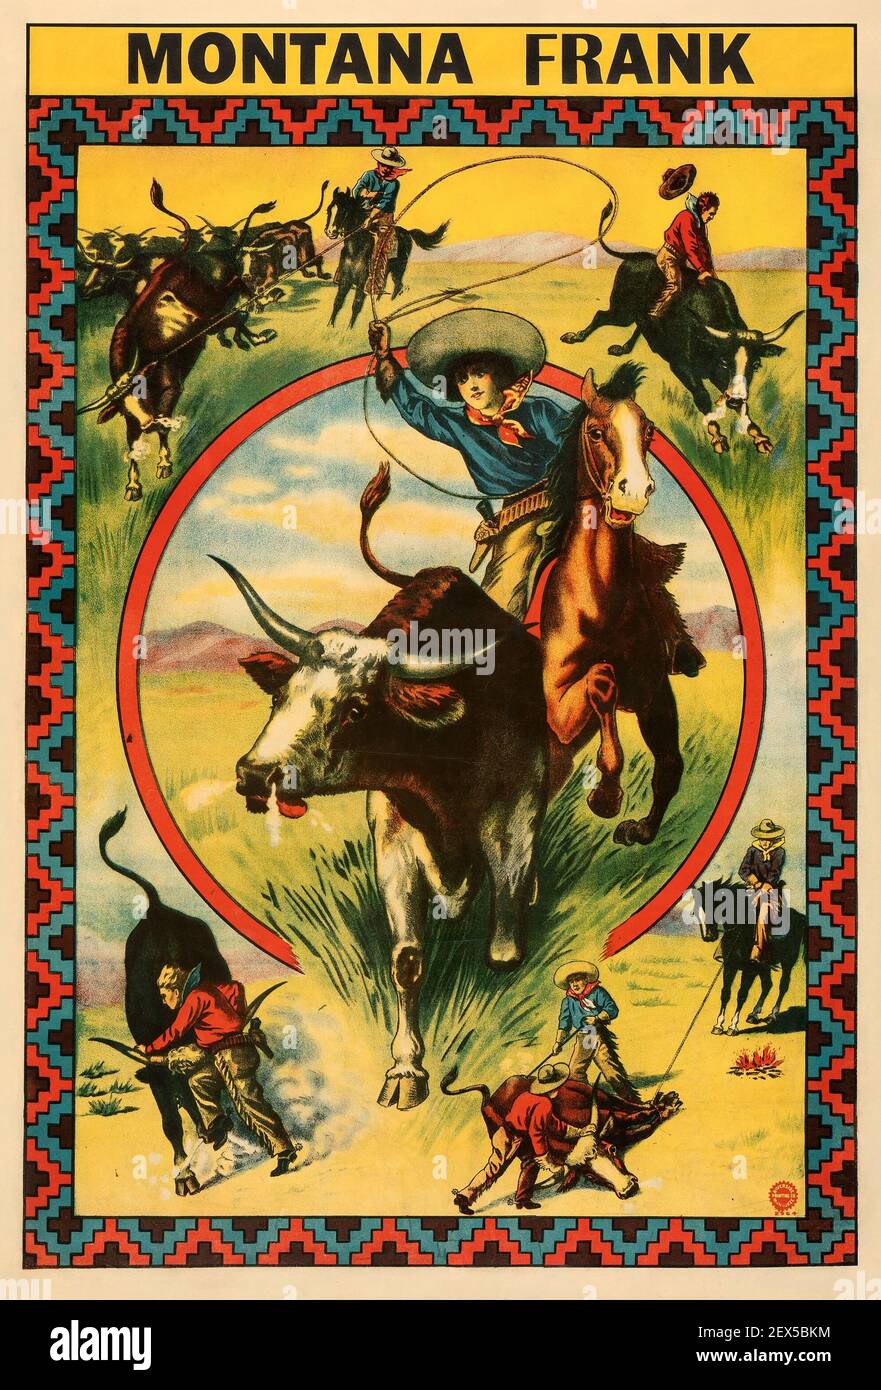 Montana Frank. Affiche de film classique, Wild West, vieux film WESTERN. 1910. Banque D'Images